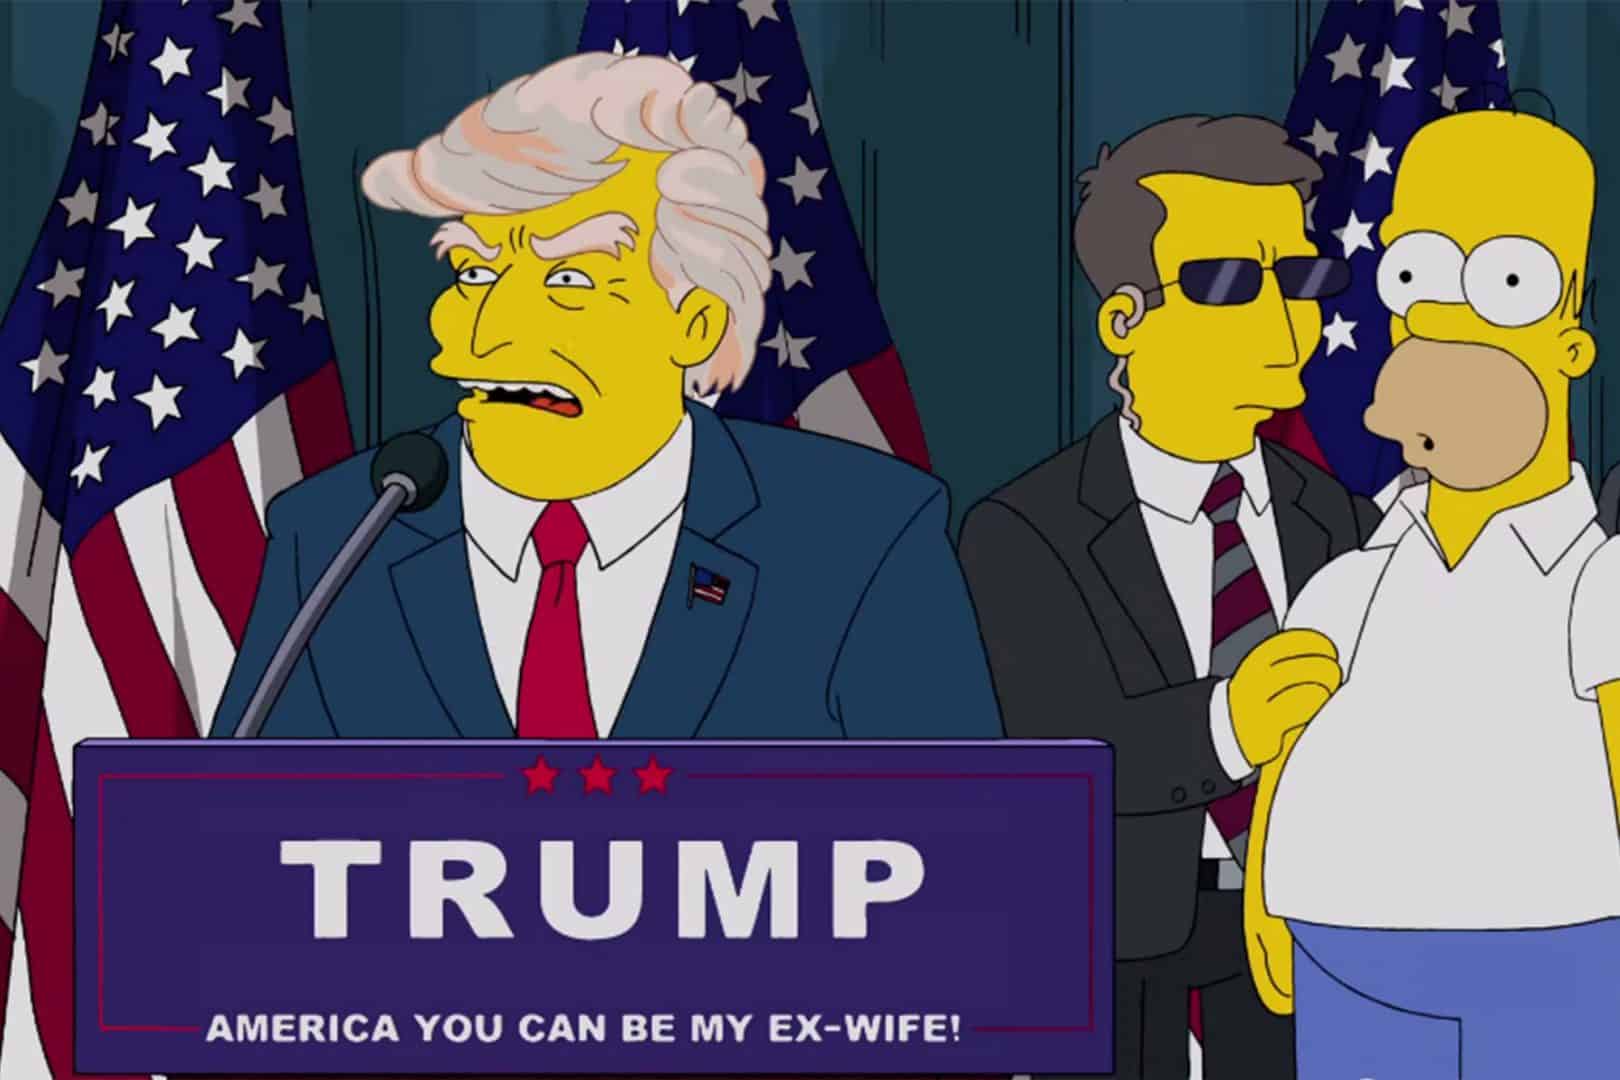 Previsões dos Simpsons - As vezes que o desenho acertou sobre o futuro